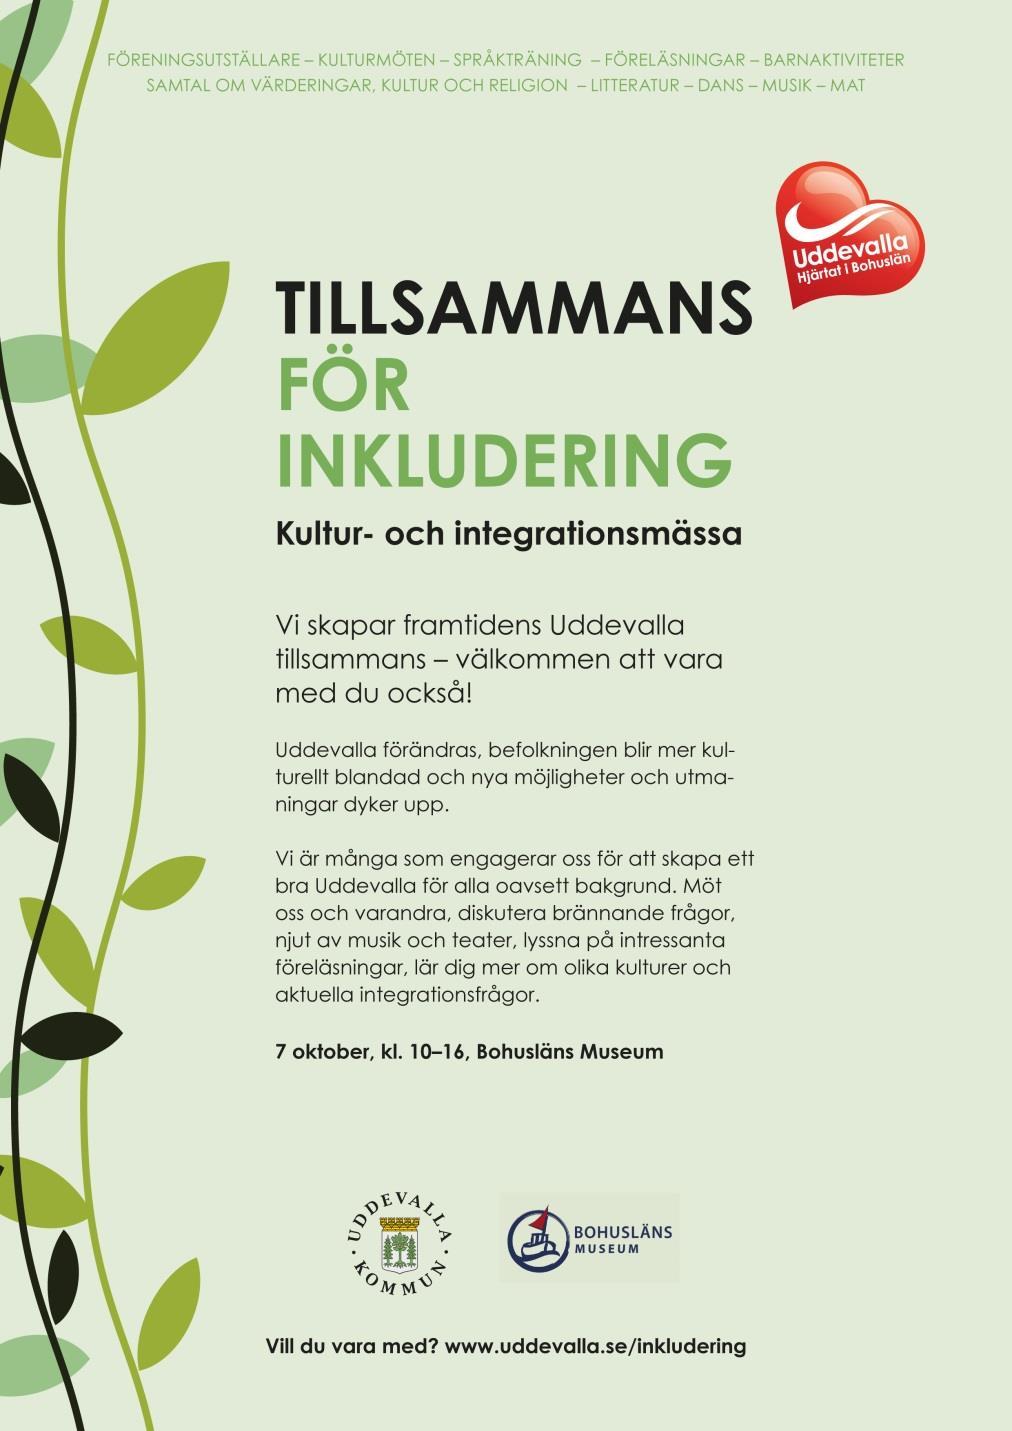 7 oktober anordnade nätverket en Kultur- och integrationsmässa på Bohusläns museum Målgrupper: Föreningar och kommunala verksamheter som jobbar med integration, nyanlända, asylsökande och allmänheten